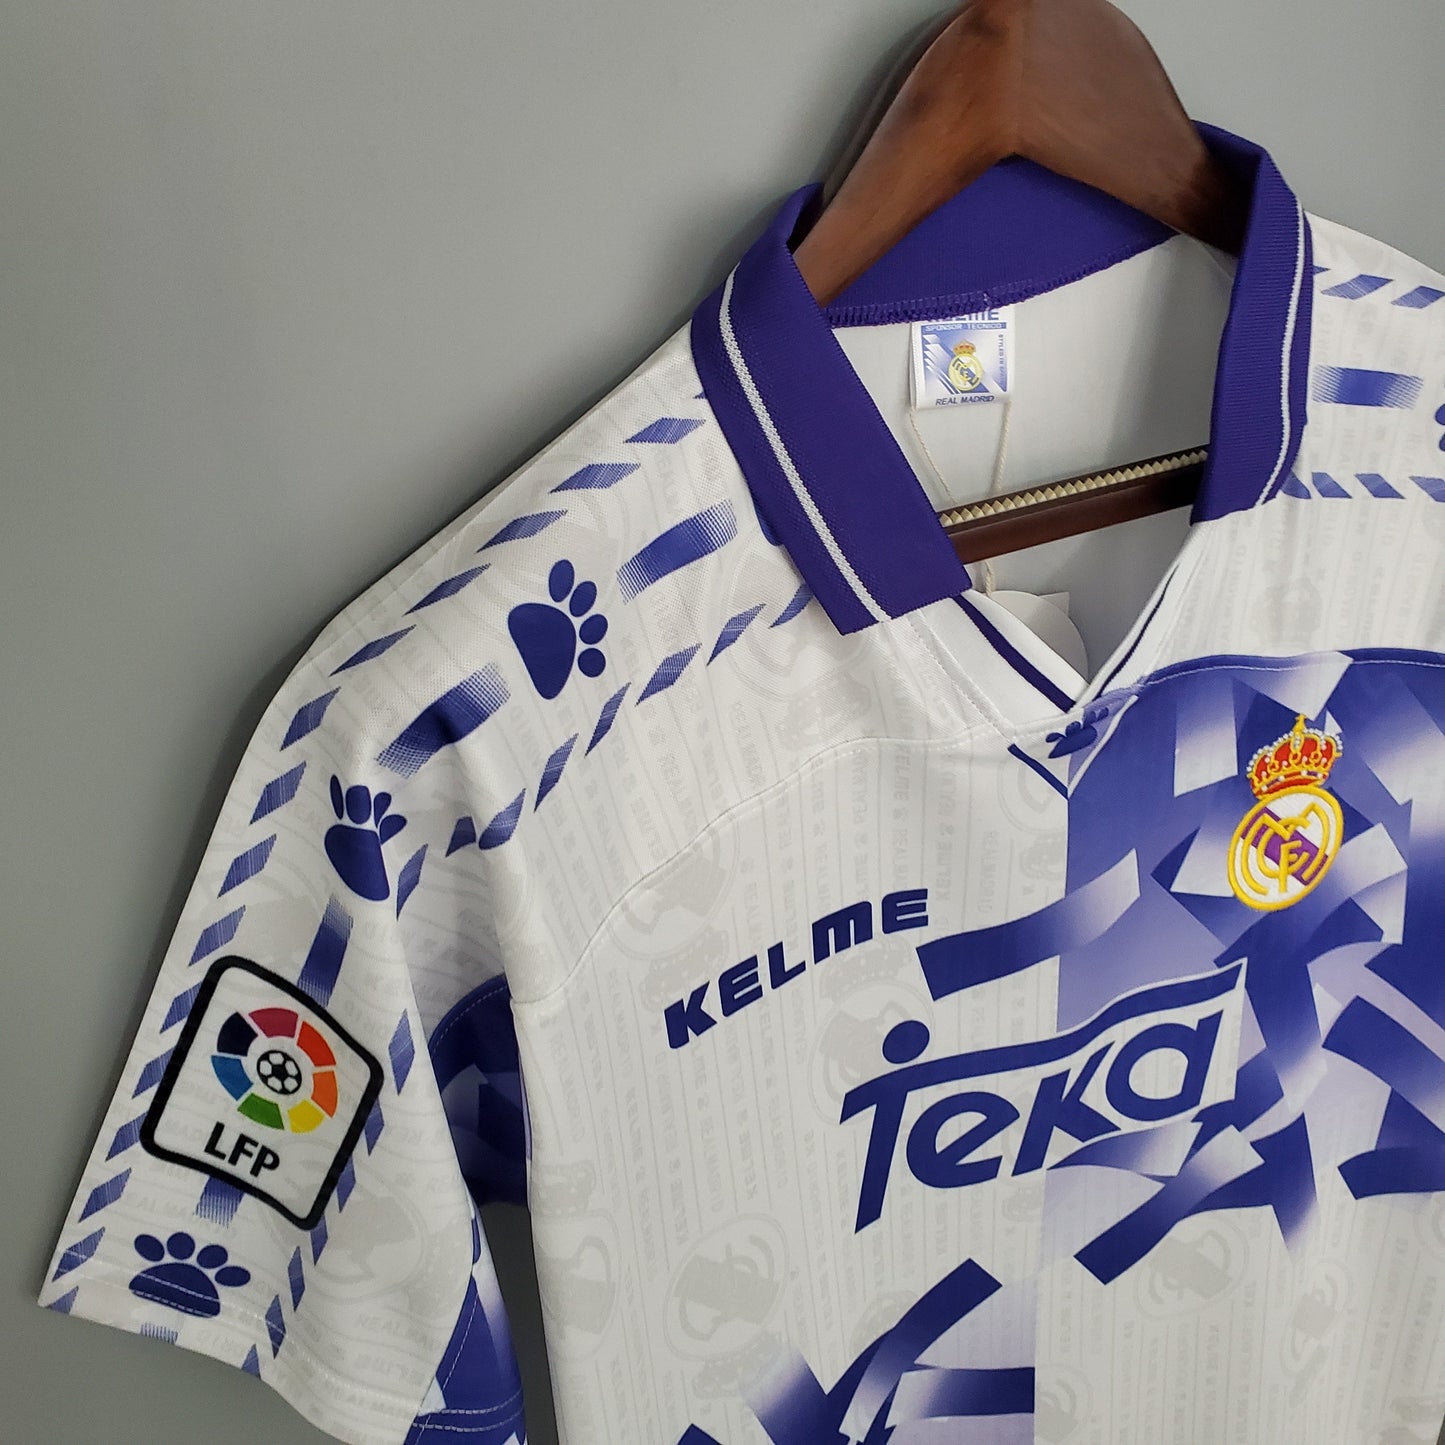 Real Madrid 96/97 Tercer kit | Retro